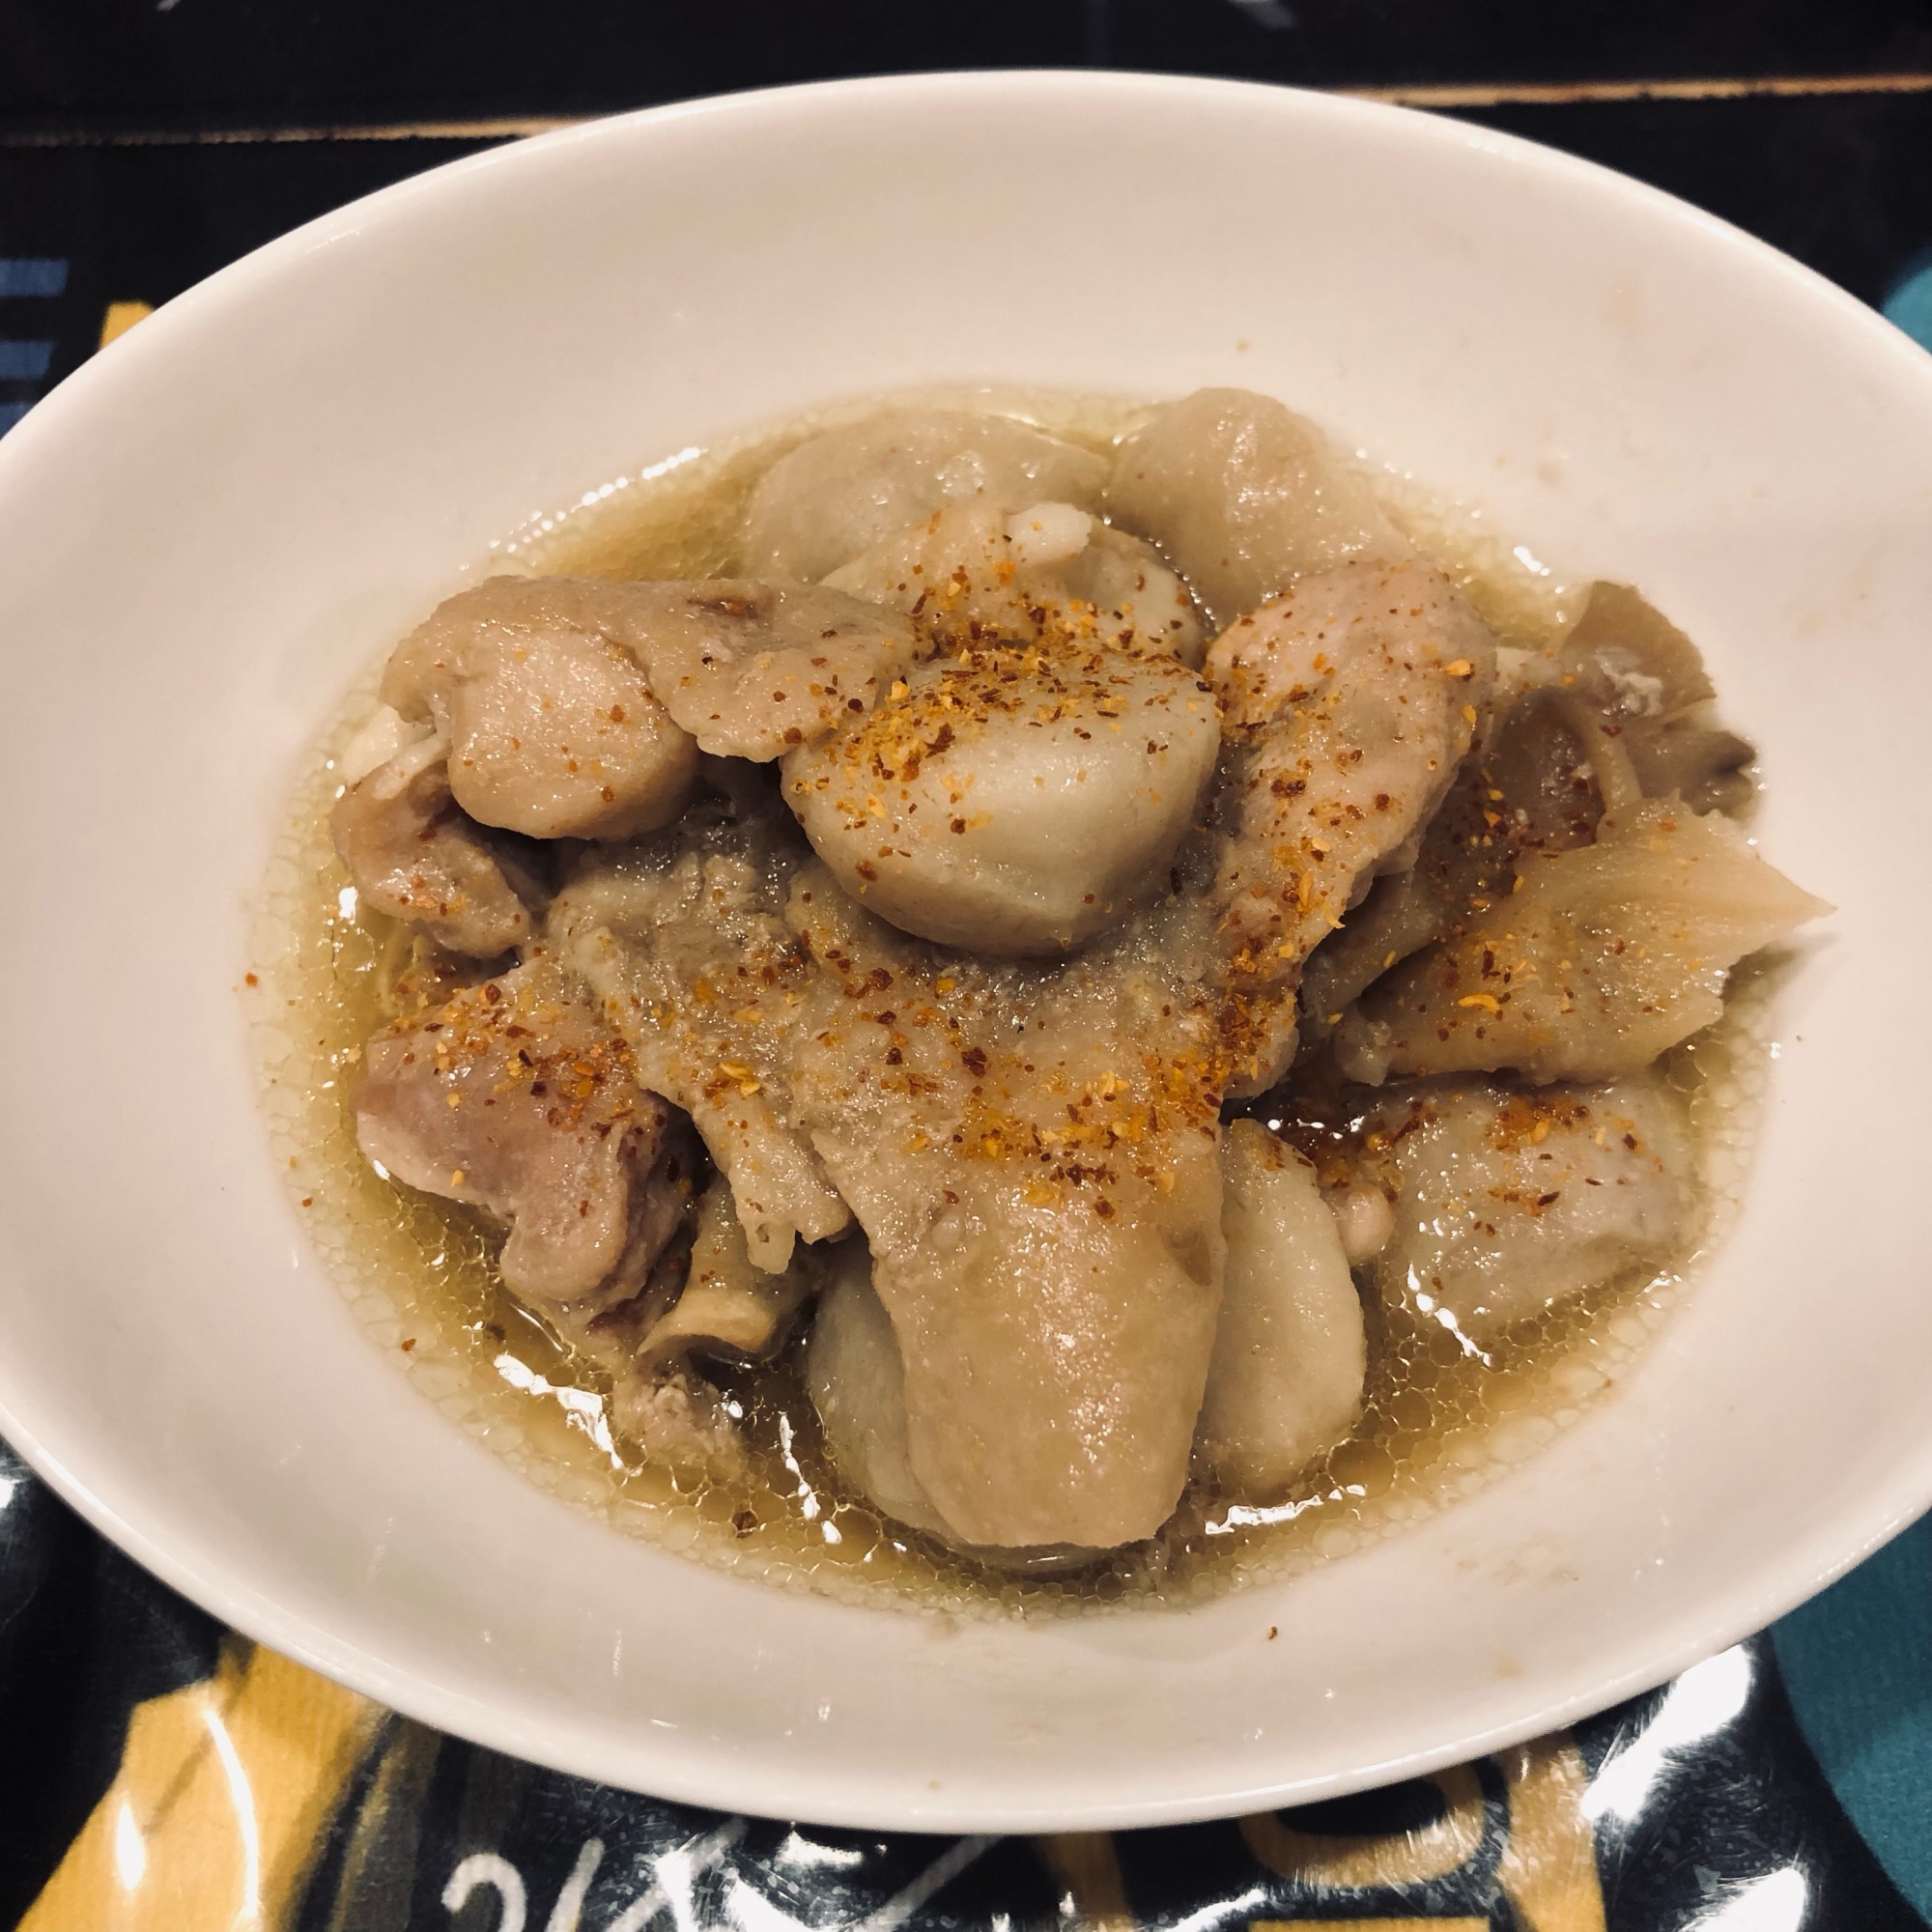 鶏肉と里芋の煮物